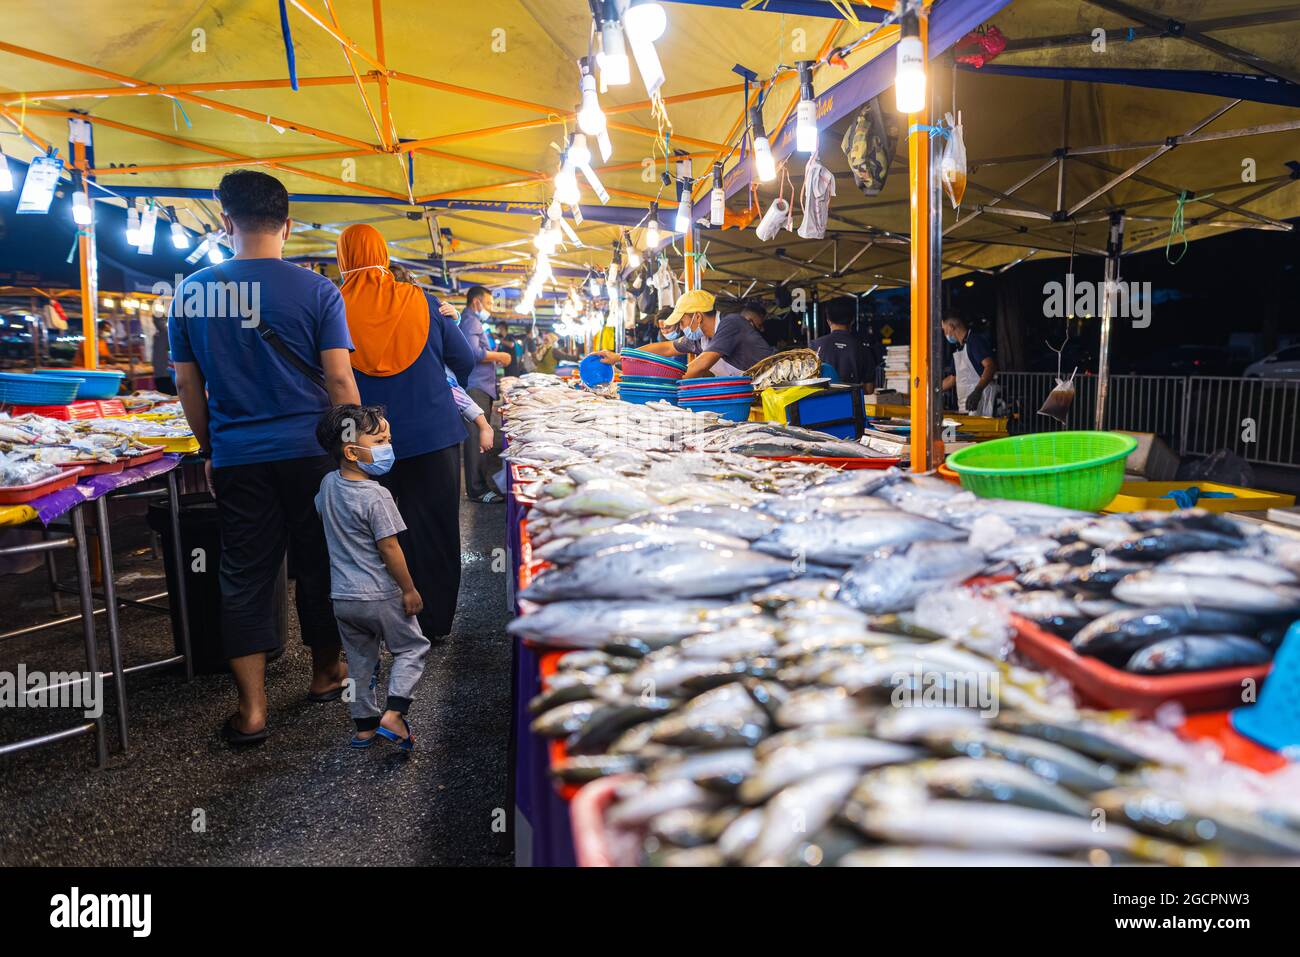 Marché nocturne de la cuisine de rue à Putrajaya, près de Kuala Lumpur. Comptoir de fruits de mer avec poisson frais sur le comptoir. Famille malaise avec un petit garçon passant Banque D'Images